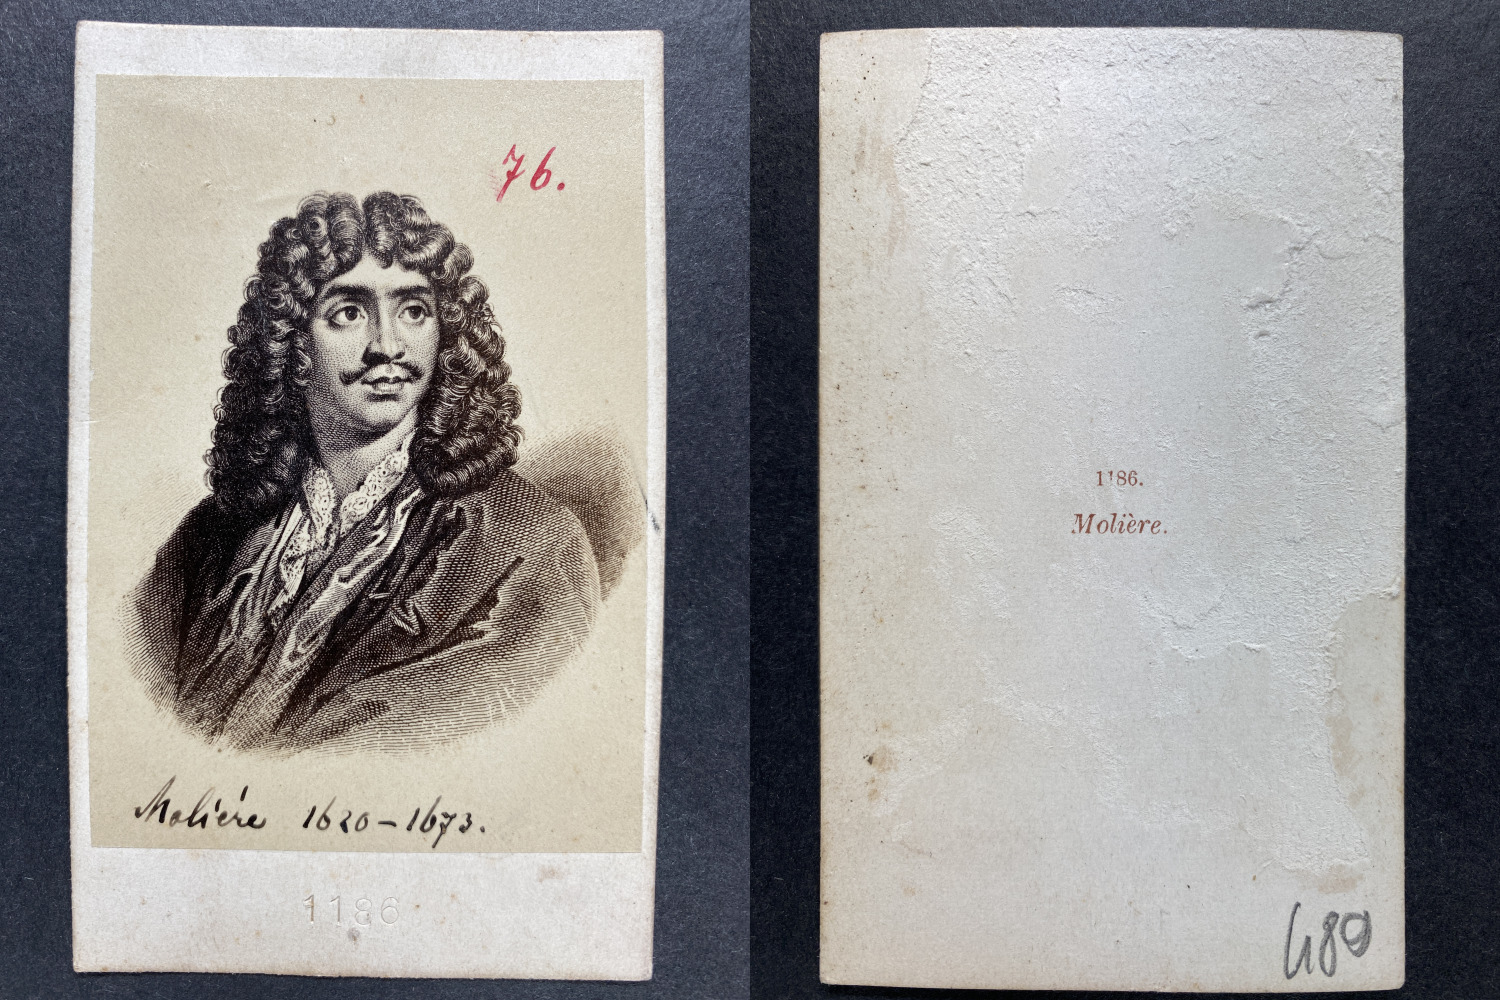 Vintage Molière cdv albumen print. CDV, albumin print